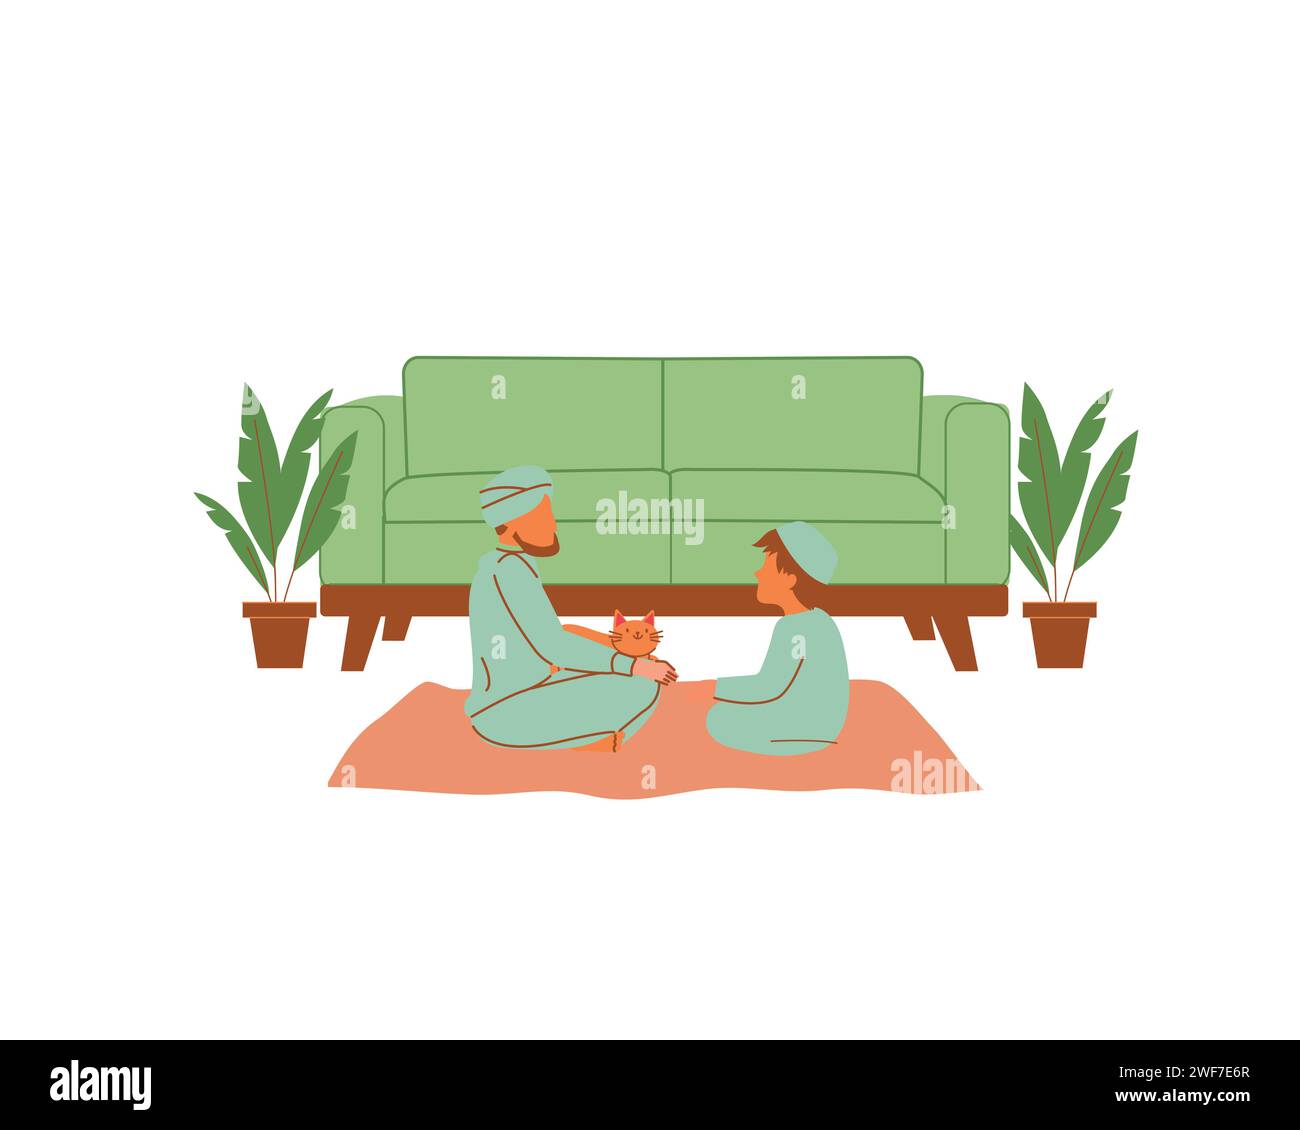 Homme et son enfant assis sur le sol et jouant avec un chat. Illustration vectorielle plate. Conception et concept d'accueil et d'adoption d'animaux Illustration de Vecteur